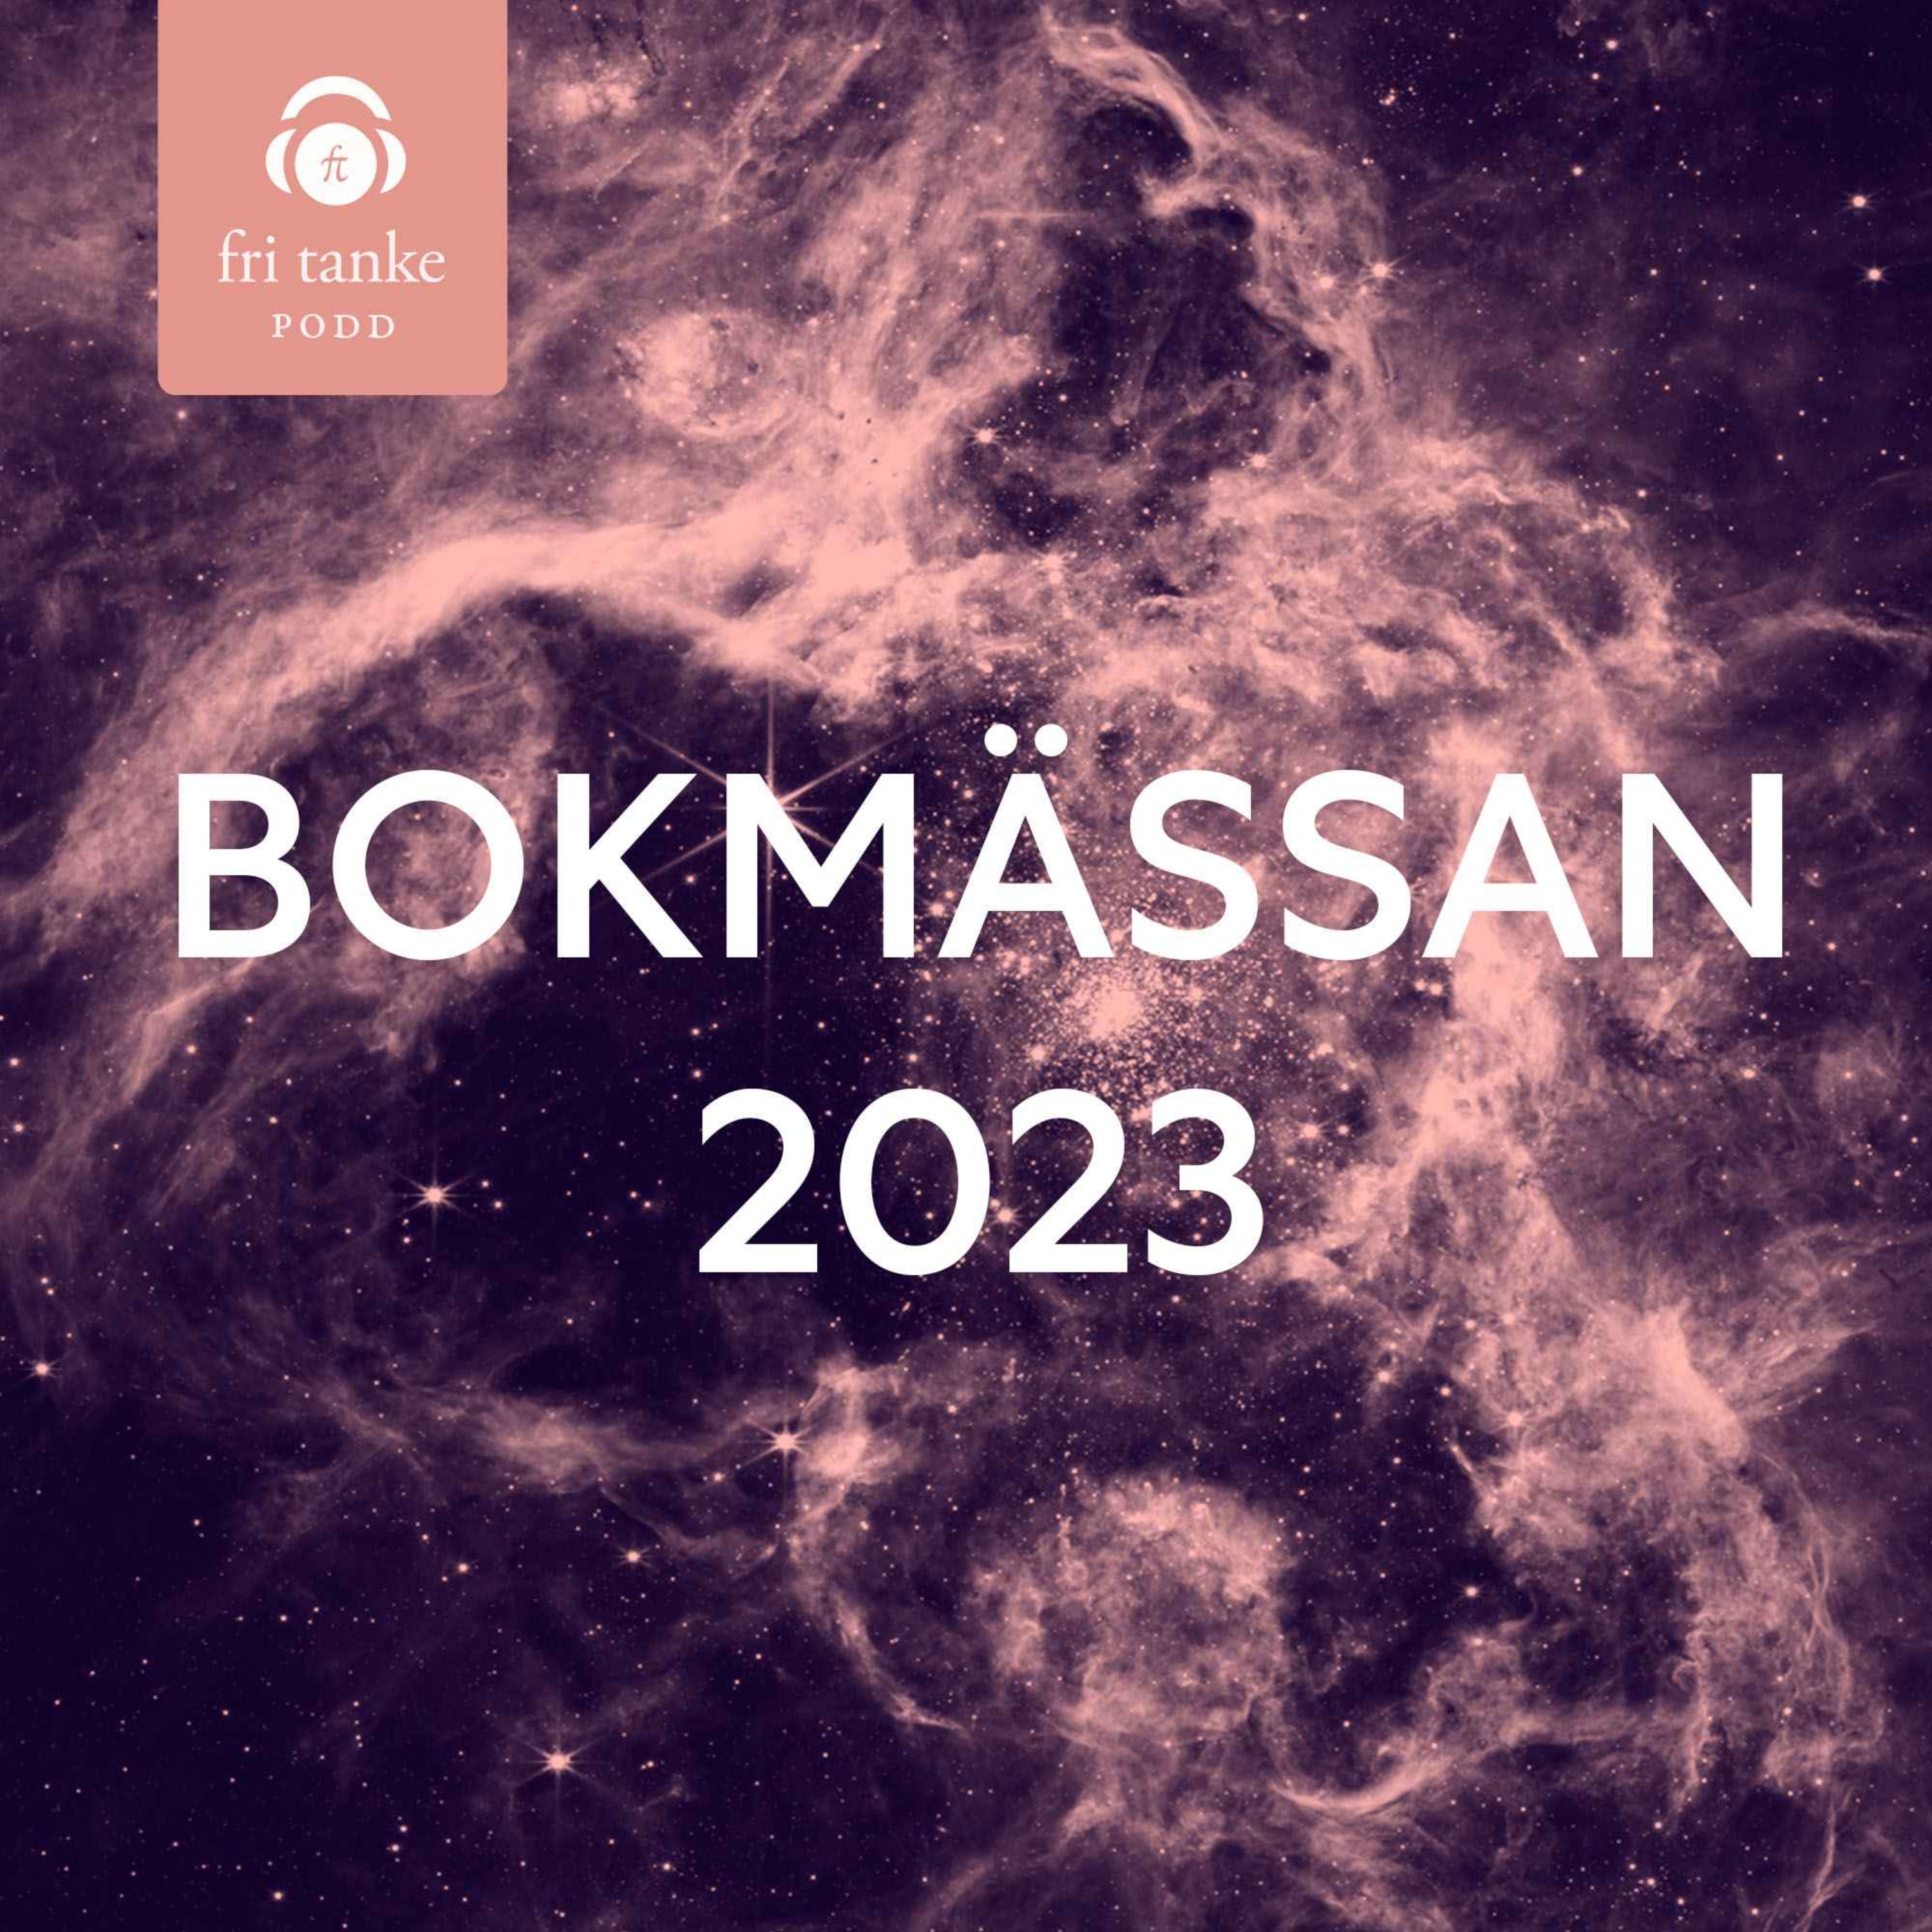 Poddspecial: Bokmässan 2023 del 2